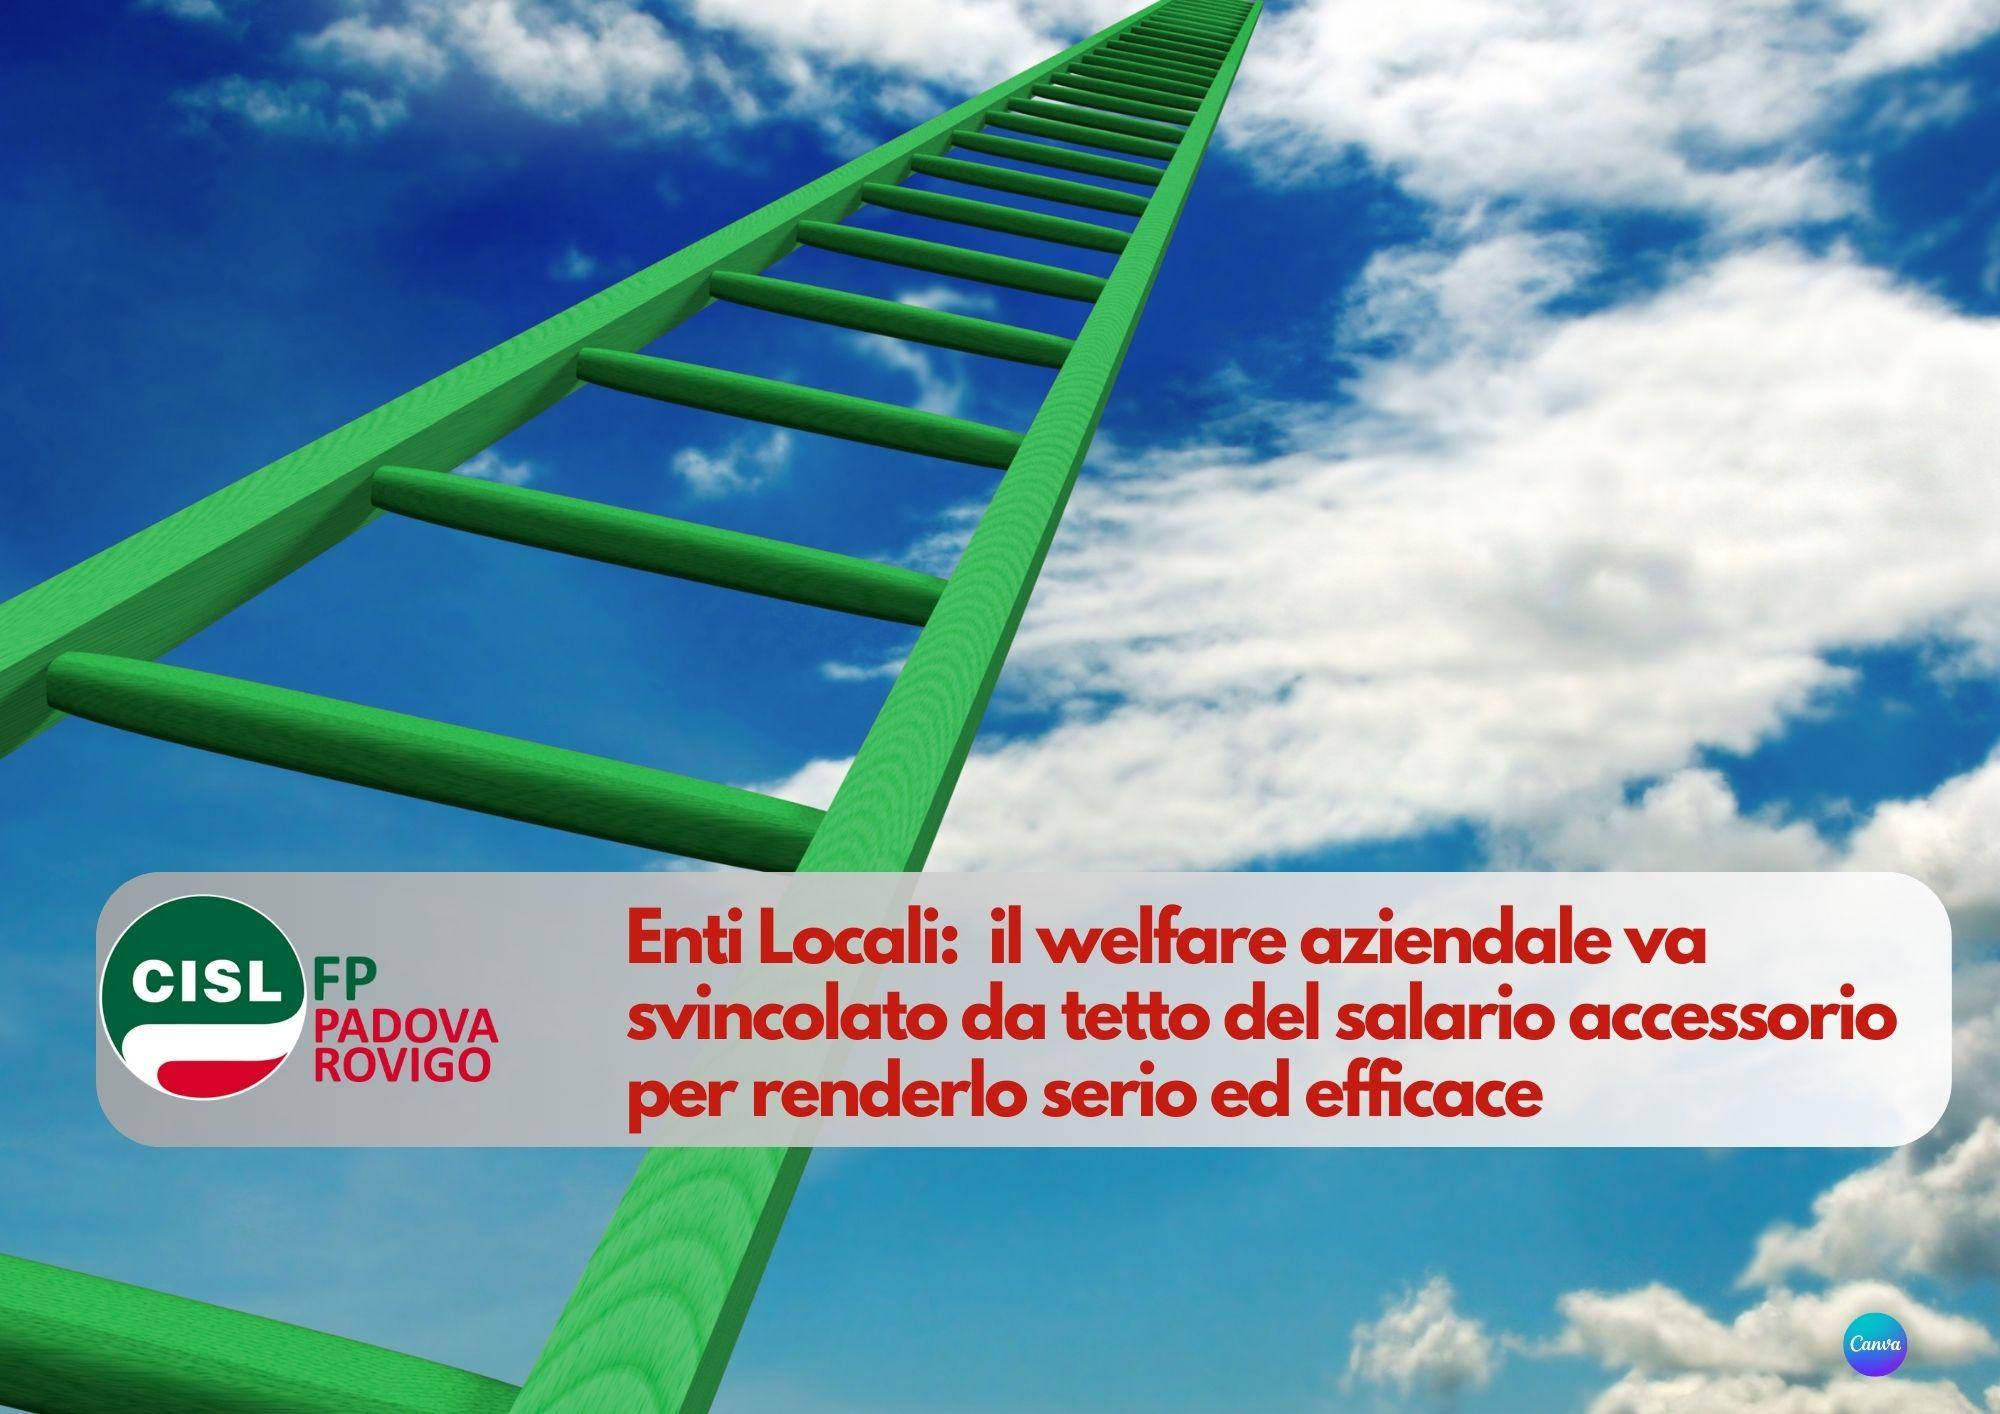 CISL FP Padova Rovigo. Enti Locali: il welfare aziendale va svincolato da tetto del salario accessorio.